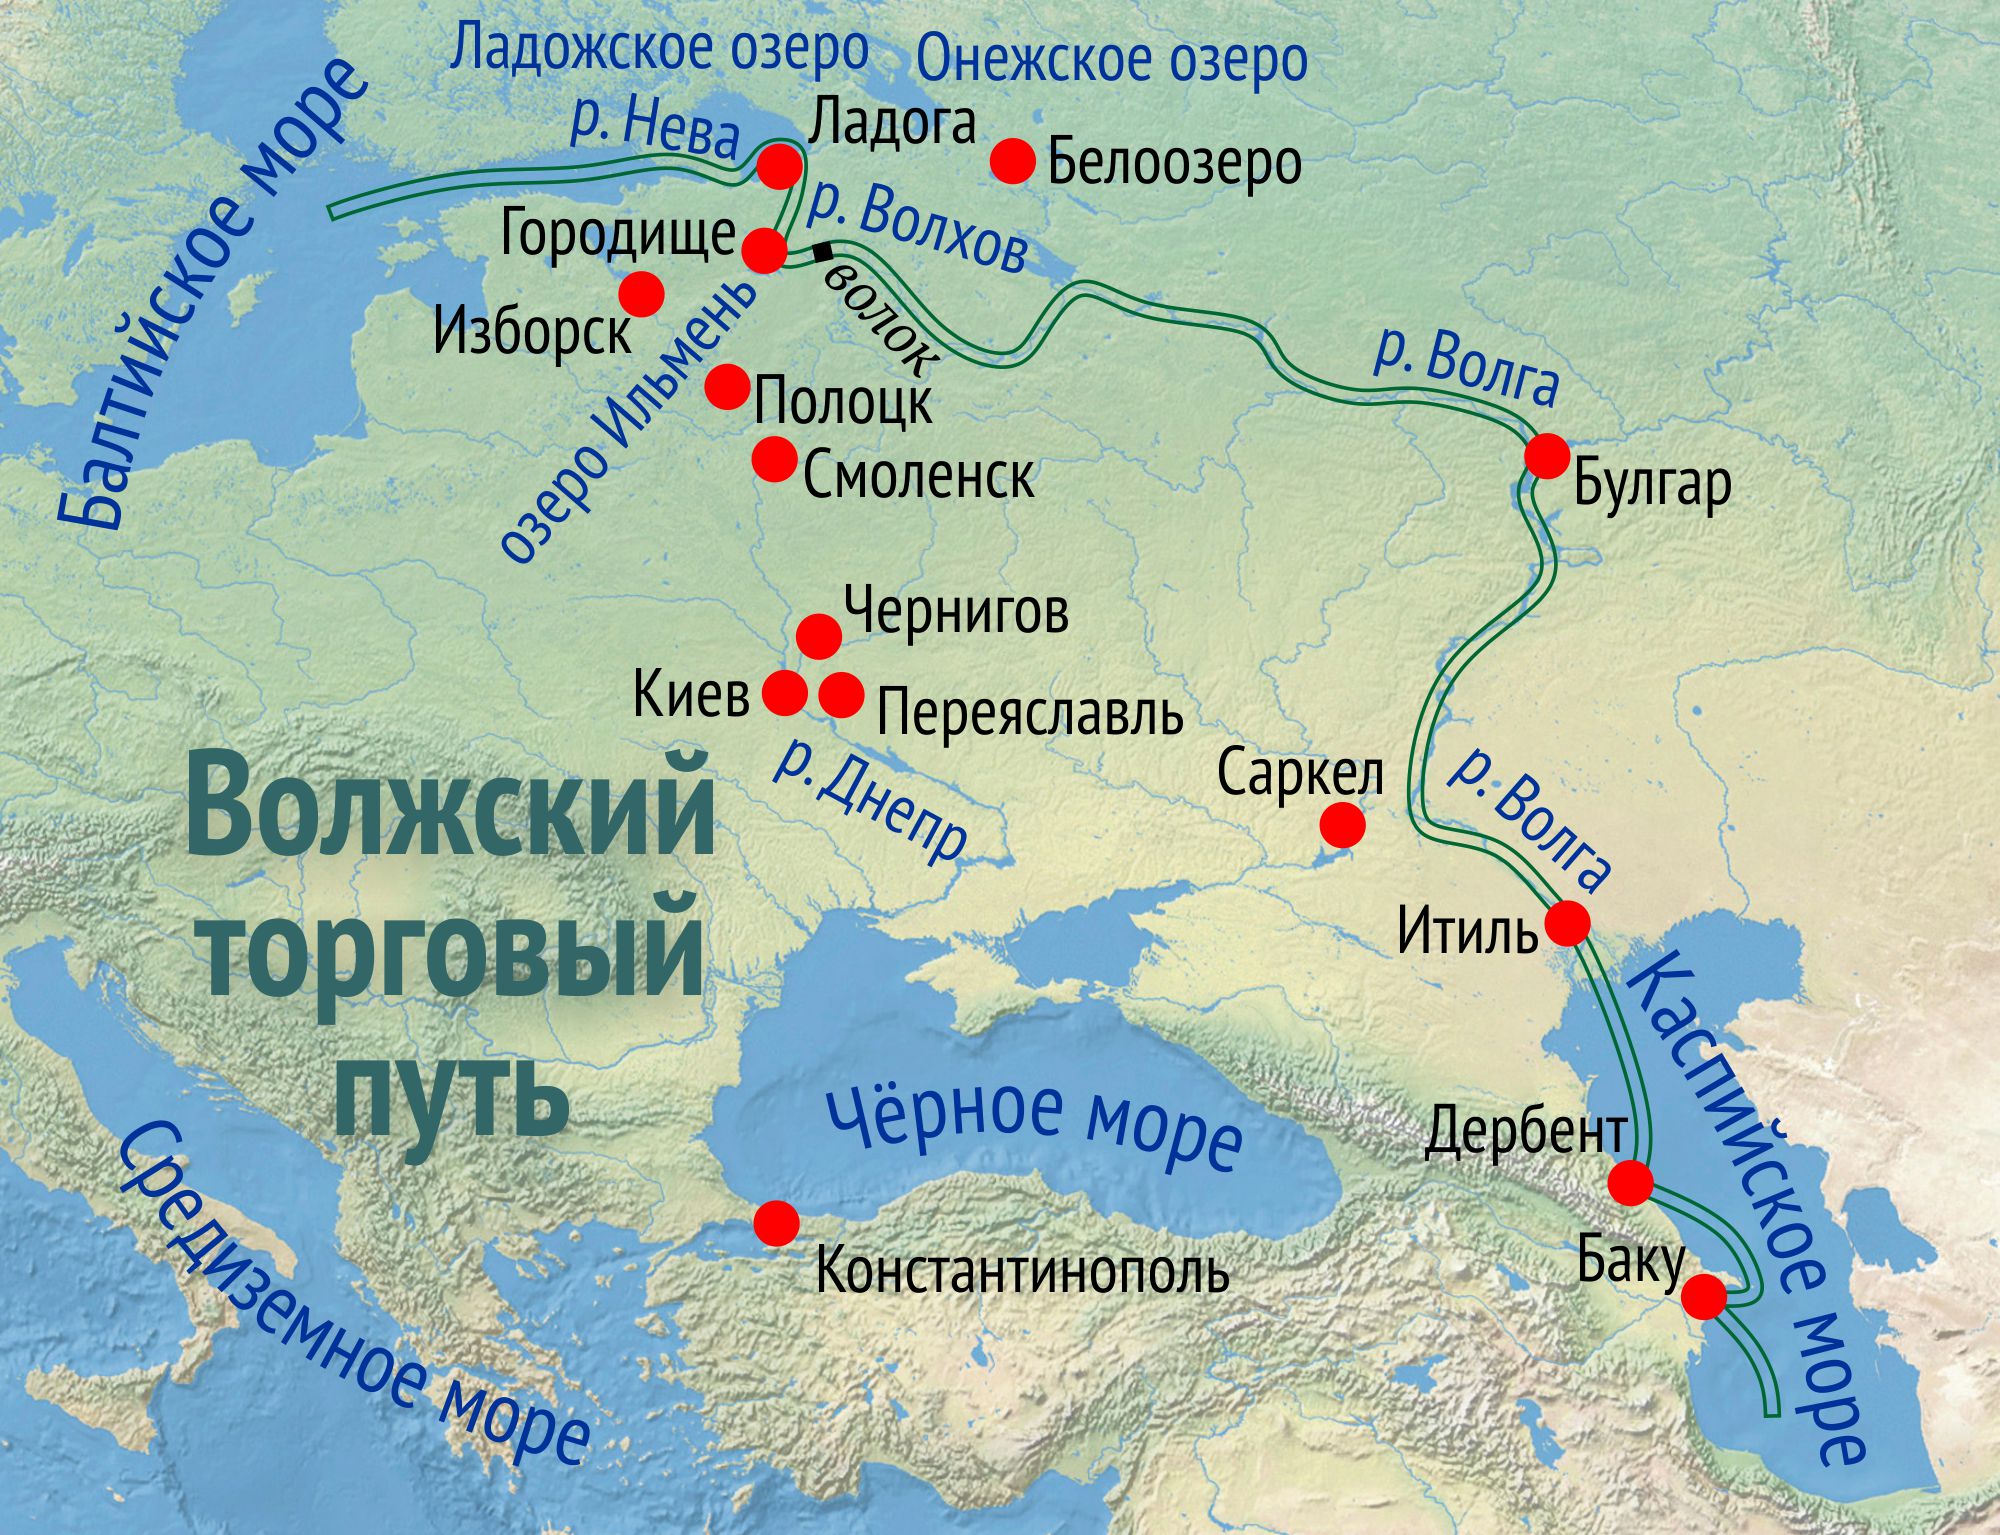 Волжский торговый путь в древней Руси